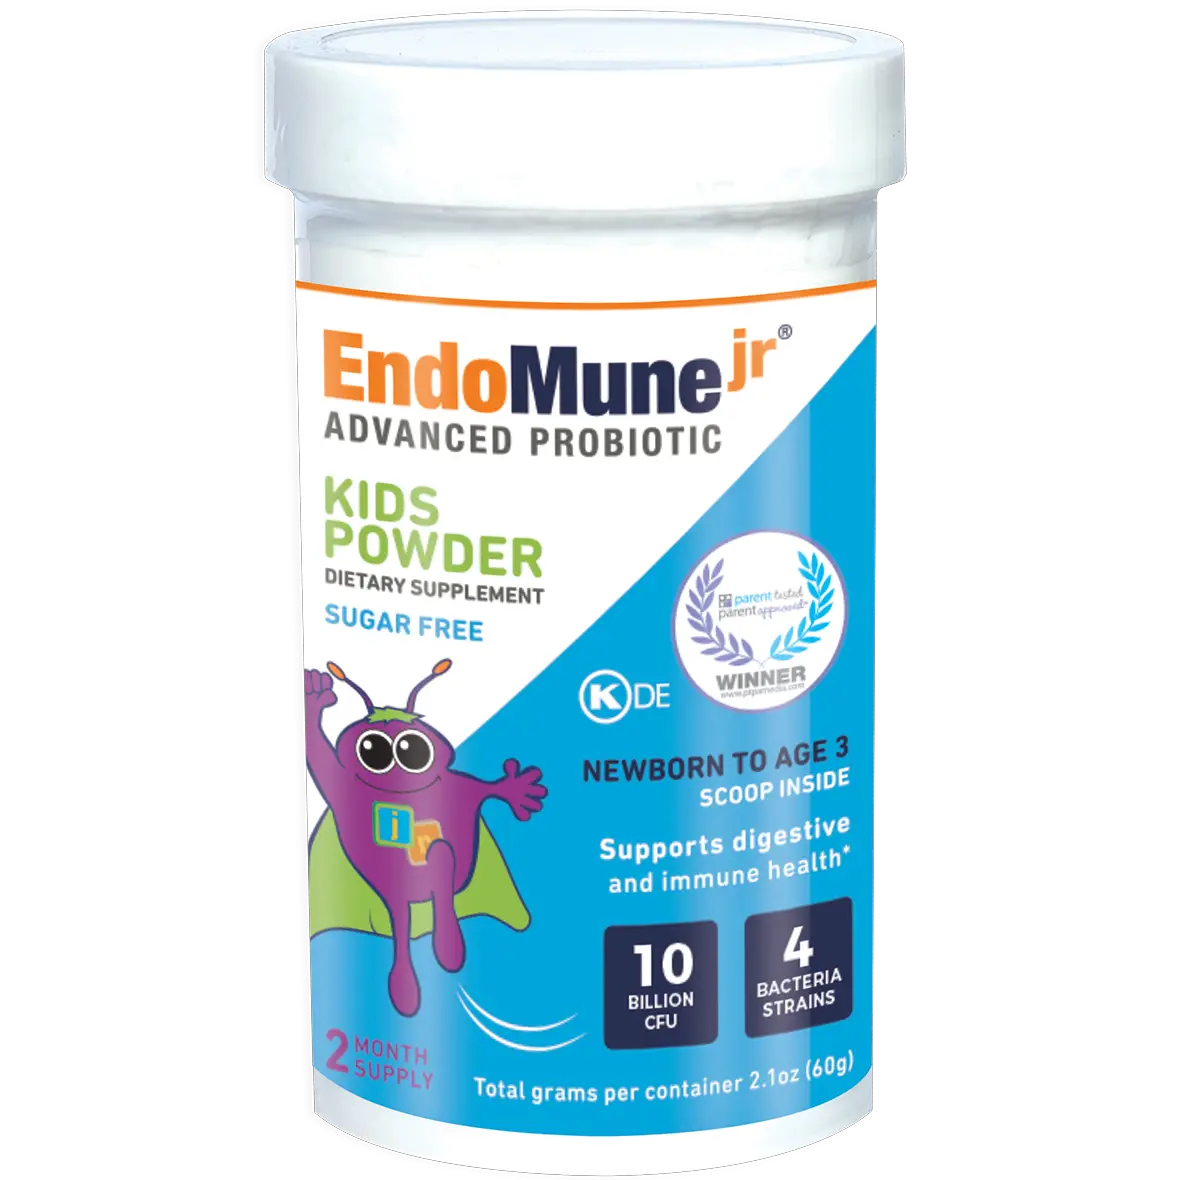 EndoMune Junior Advanced Probiotic Powder